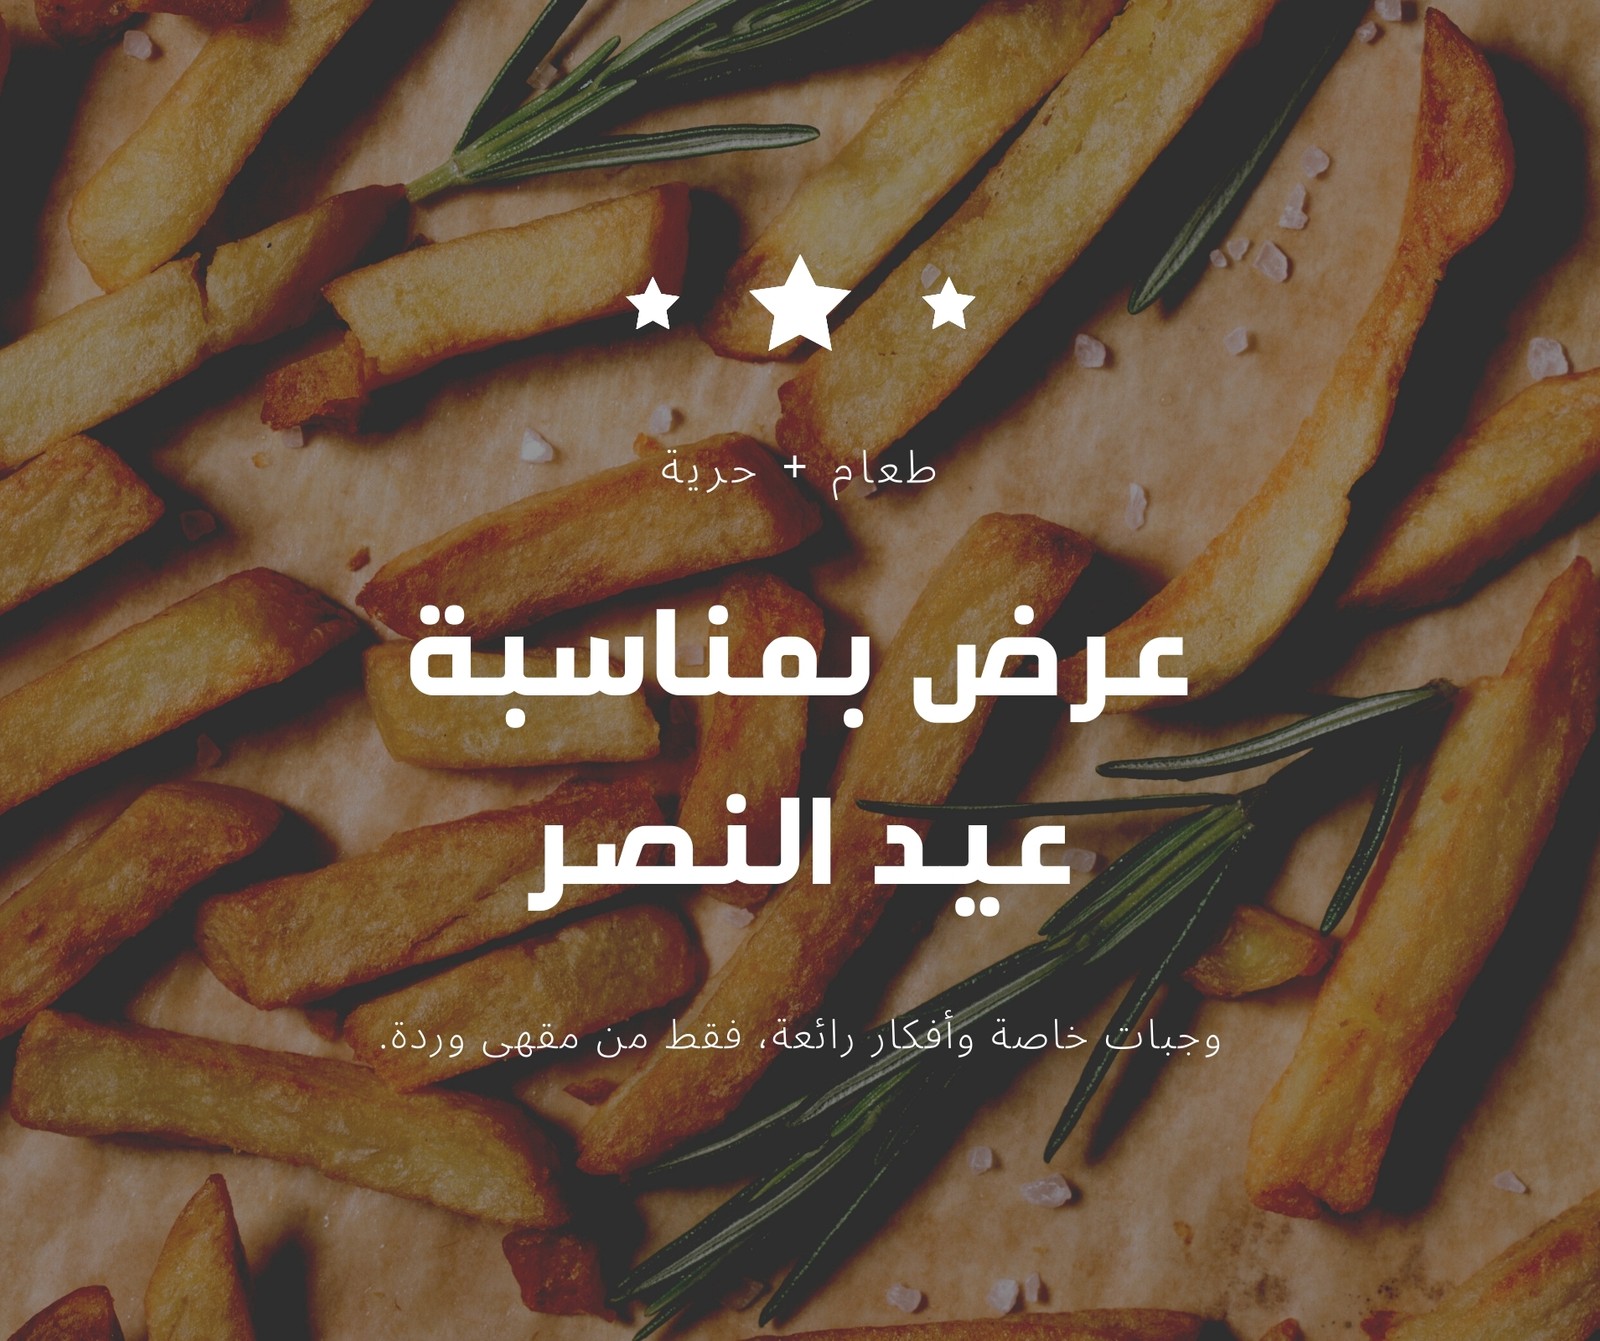 منشور فيسبوك بطاطس مقلية صورة عيد النصر